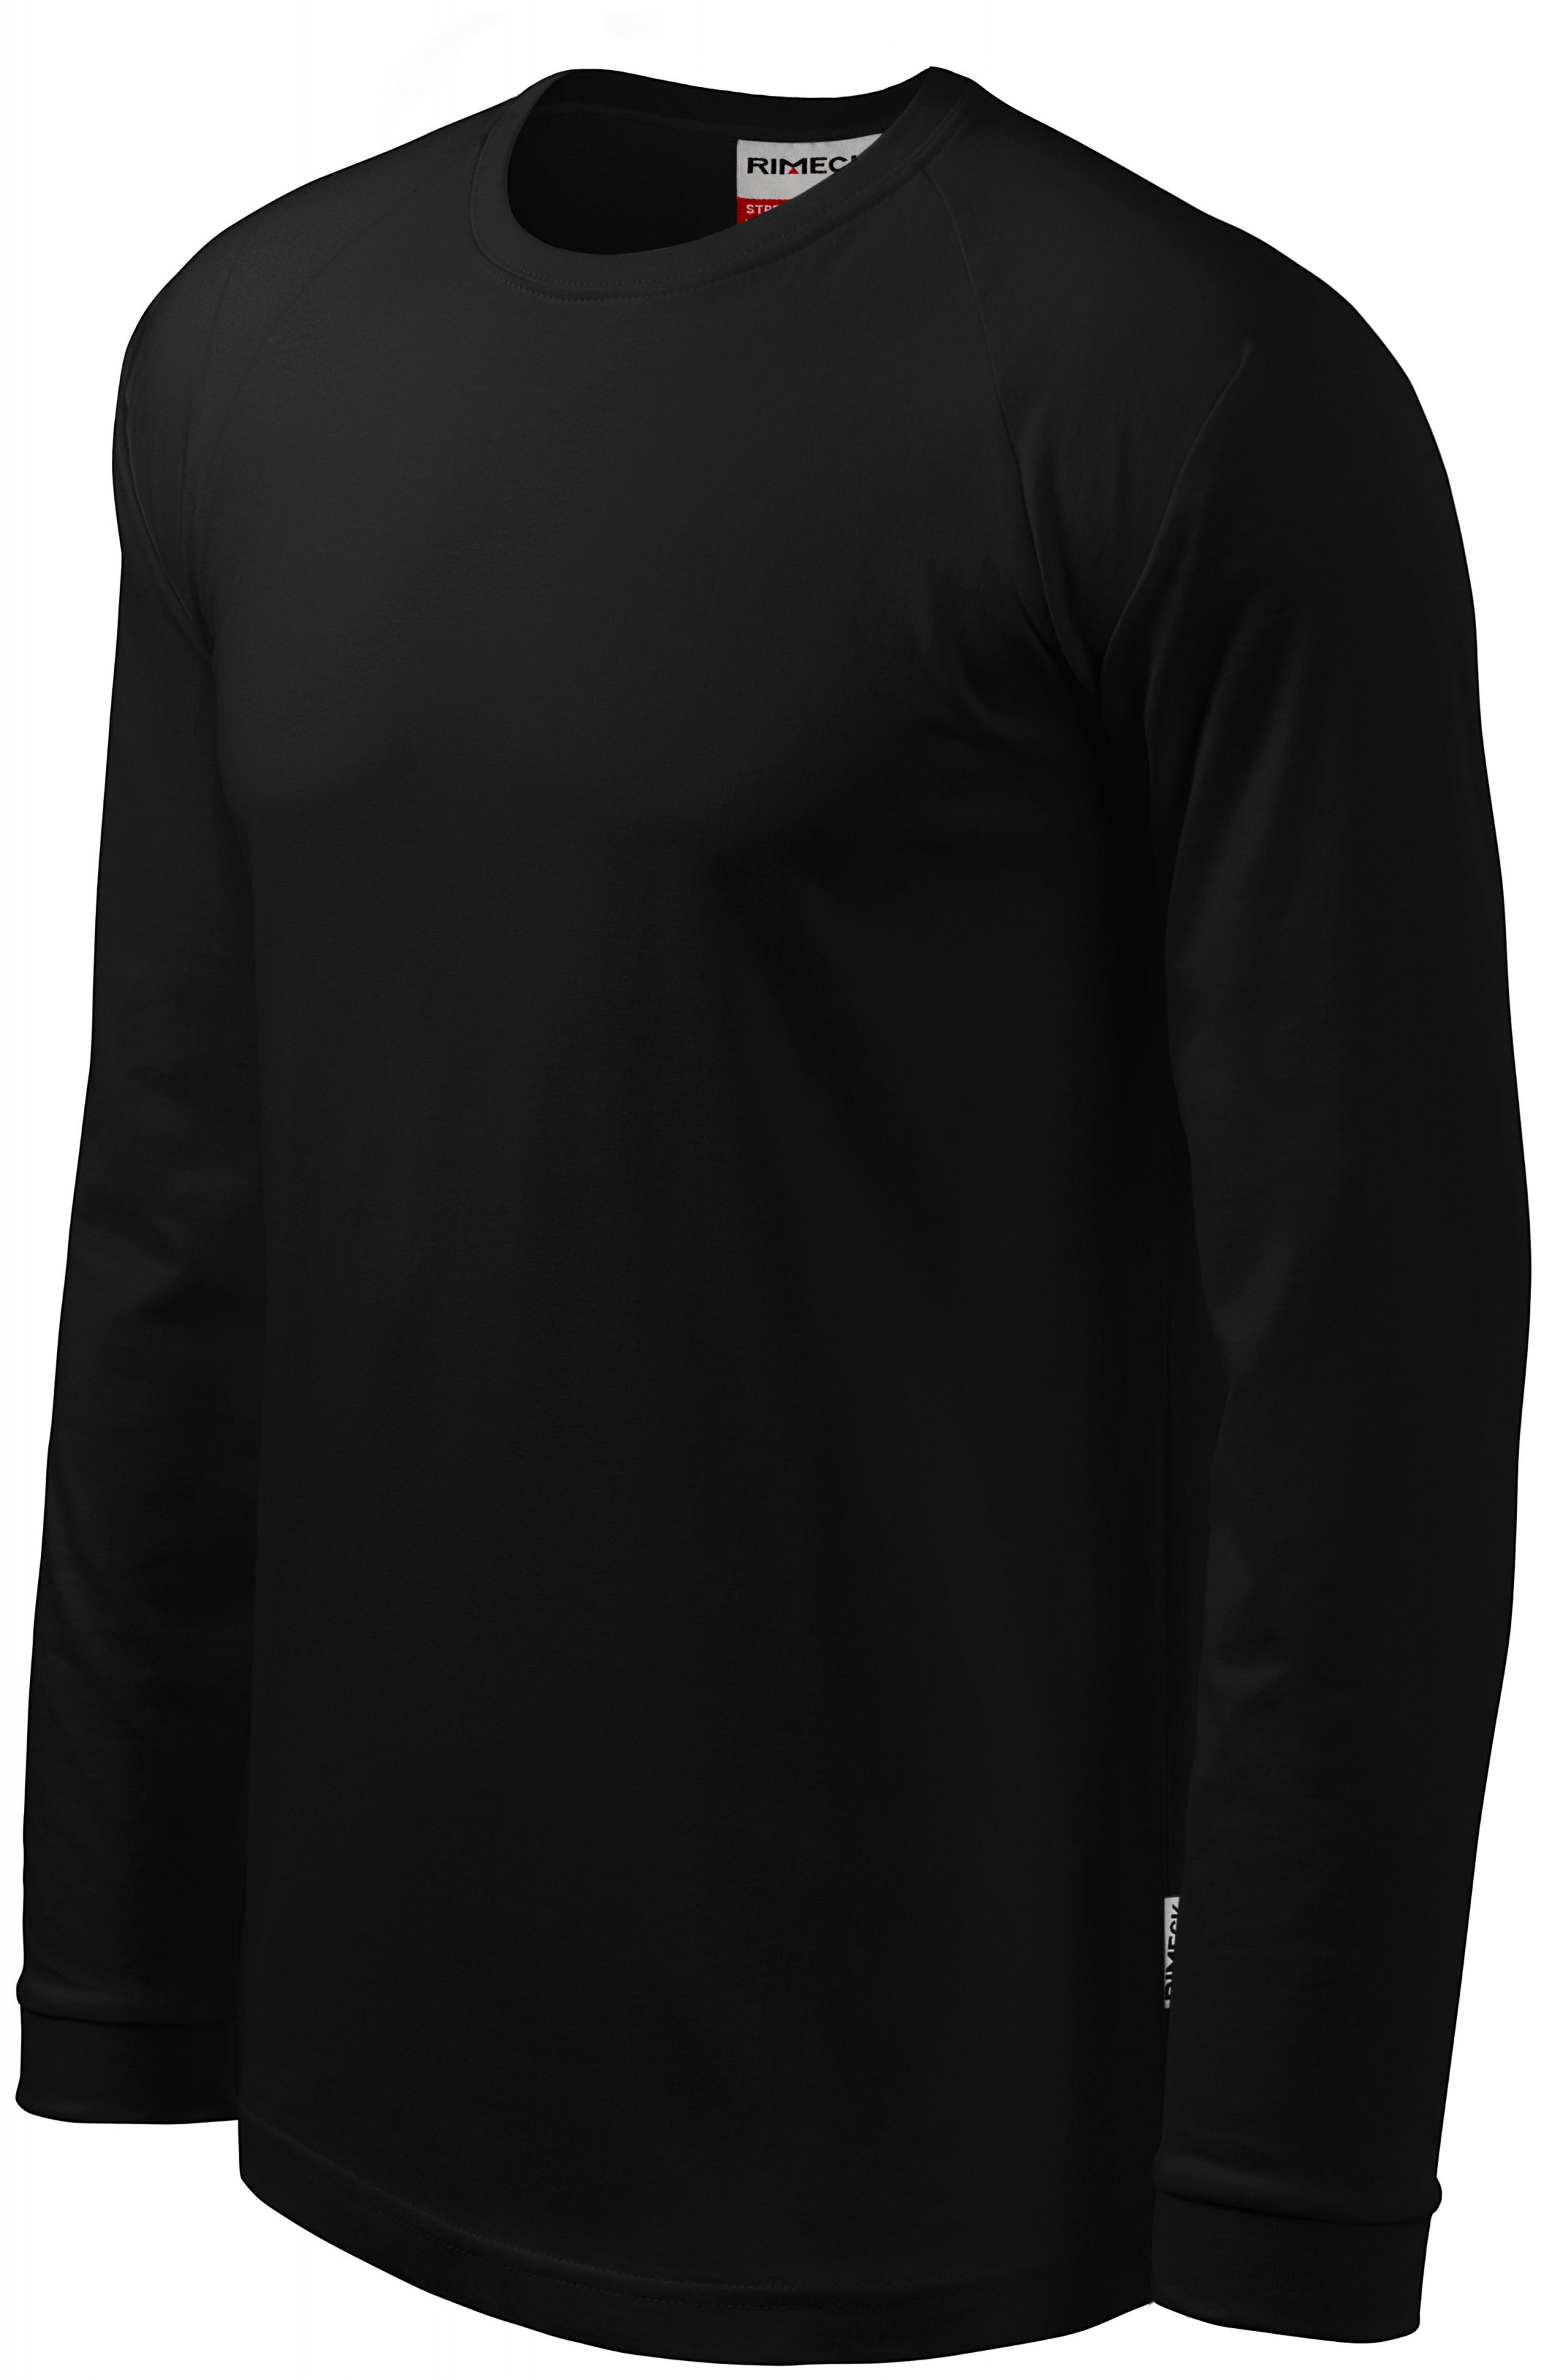 Pánske tričko s dlhým rukávom, kontrastné, čierna, XL